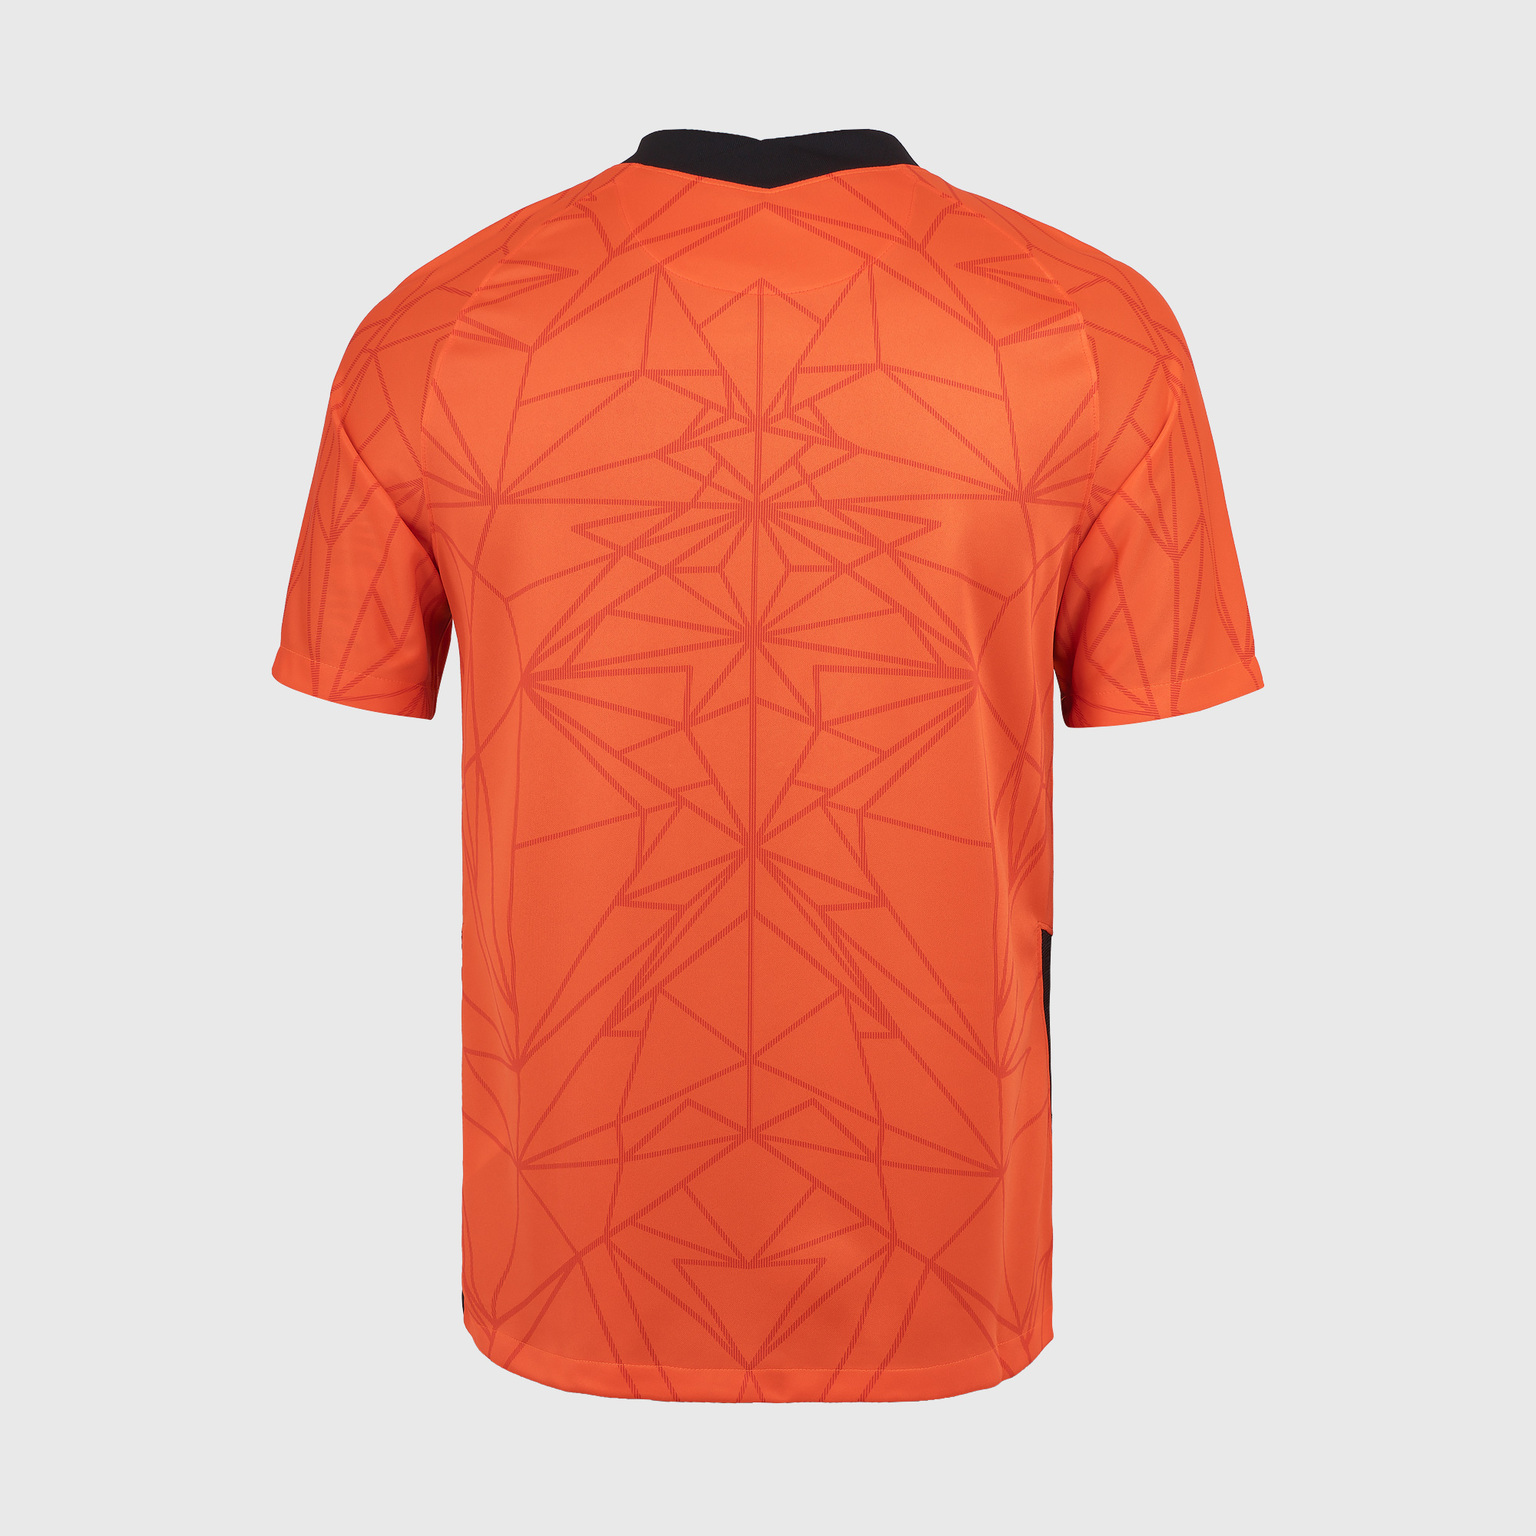 Футболка игровая домашняя Nike сборной Нидерландов сезон 2020/21